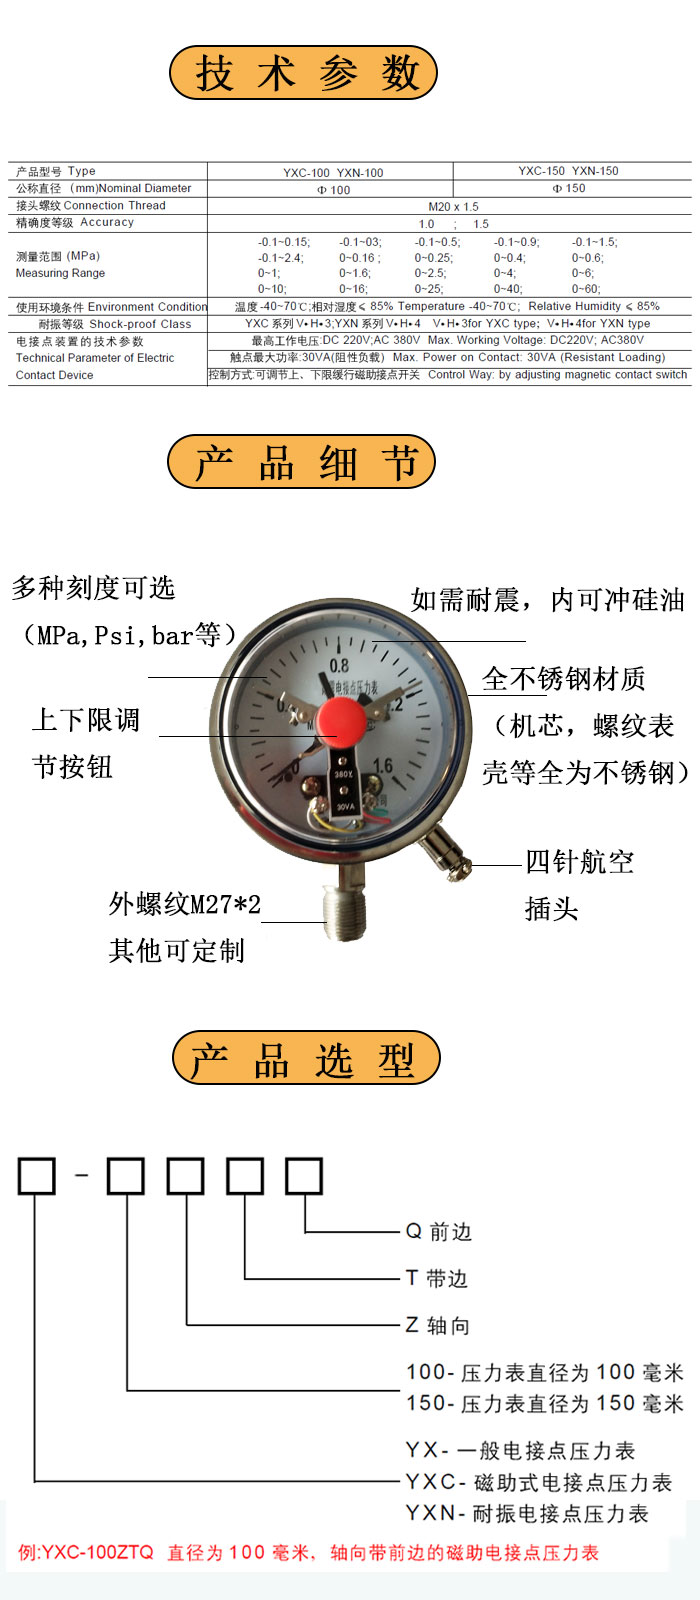 不锈钢电接点压力表 耐腐蚀不锈钢压力表 YXC-100B 1.6MPa 2.5MPa 0~300MPa可选 不锈钢压力表,电接点压力表,耐腐蚀压力表,压力表,压力仪表